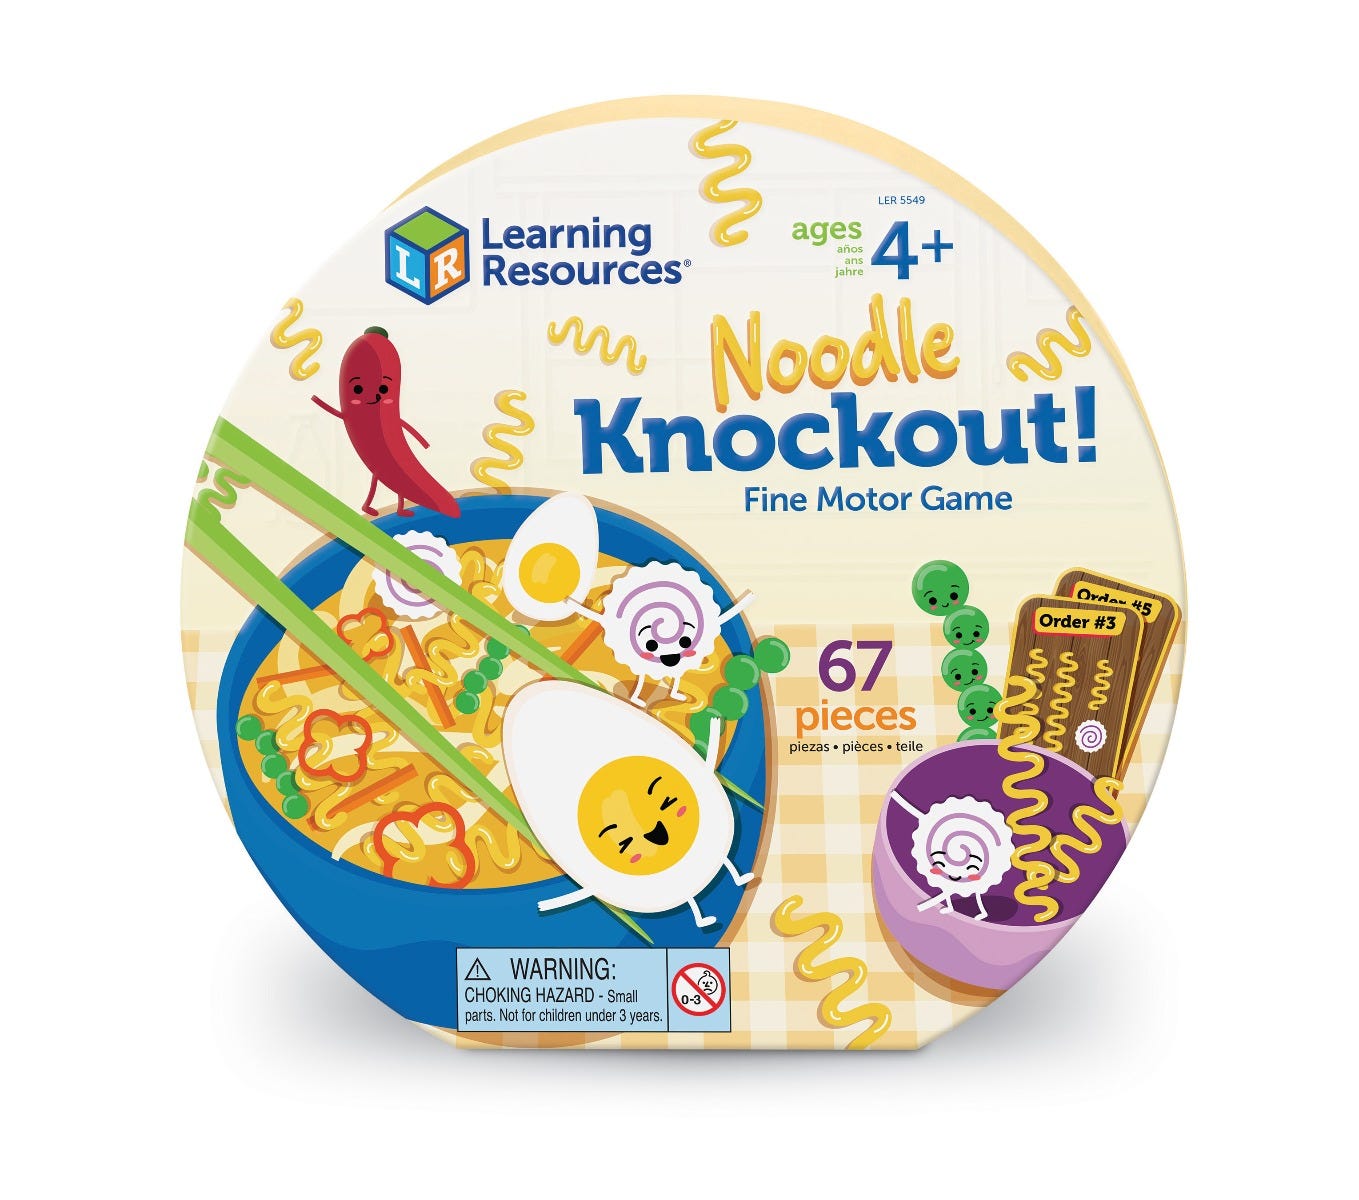 Learning Resources Noodle Knockout Fine Motor Game (LER 5549)